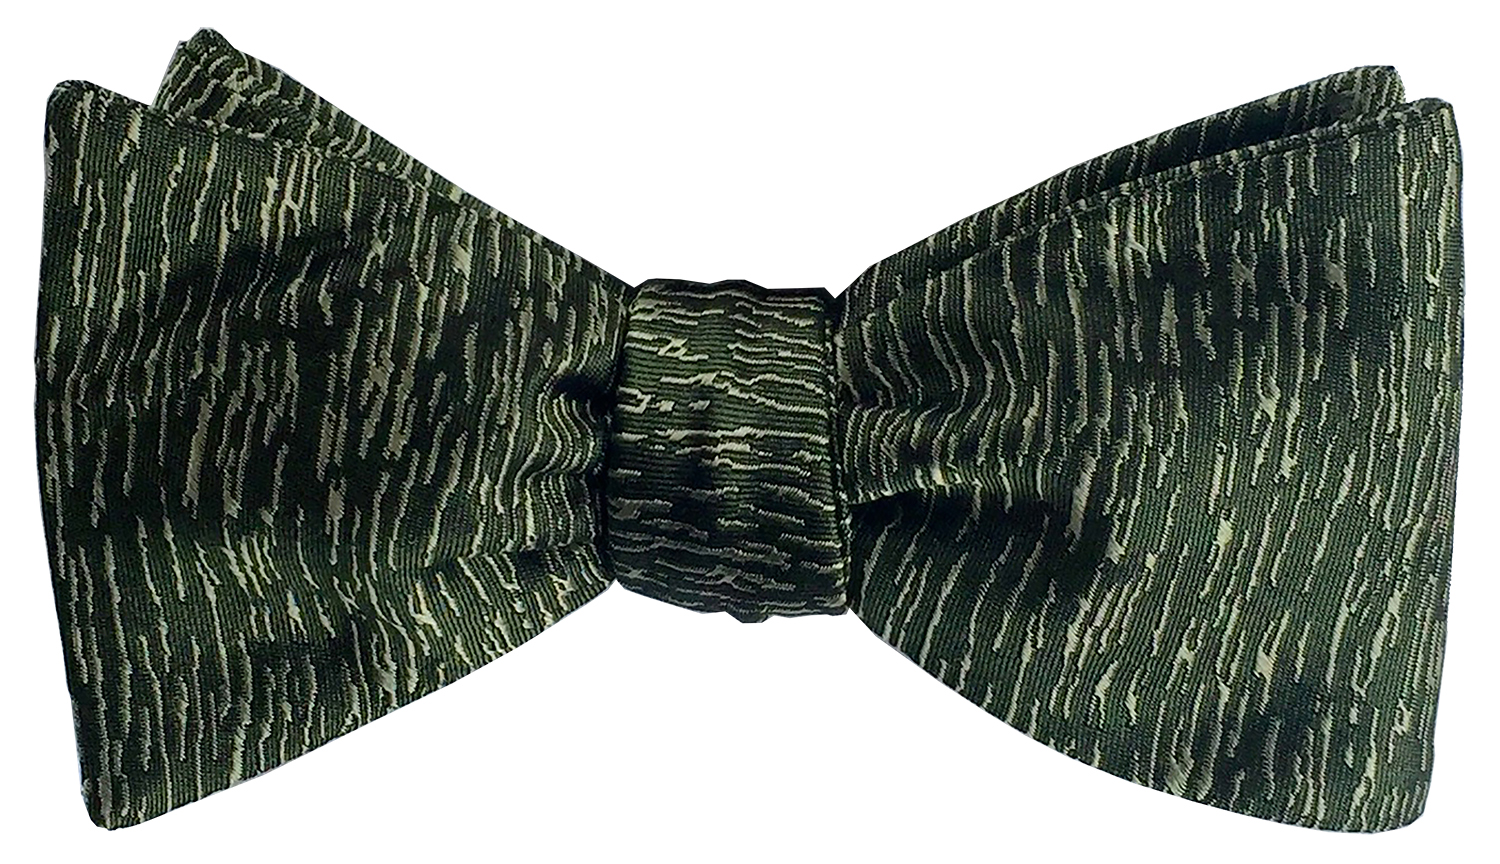 doppeldecker design designer aviation airplane aircraft silk bow tie bowtie atlantic midnight